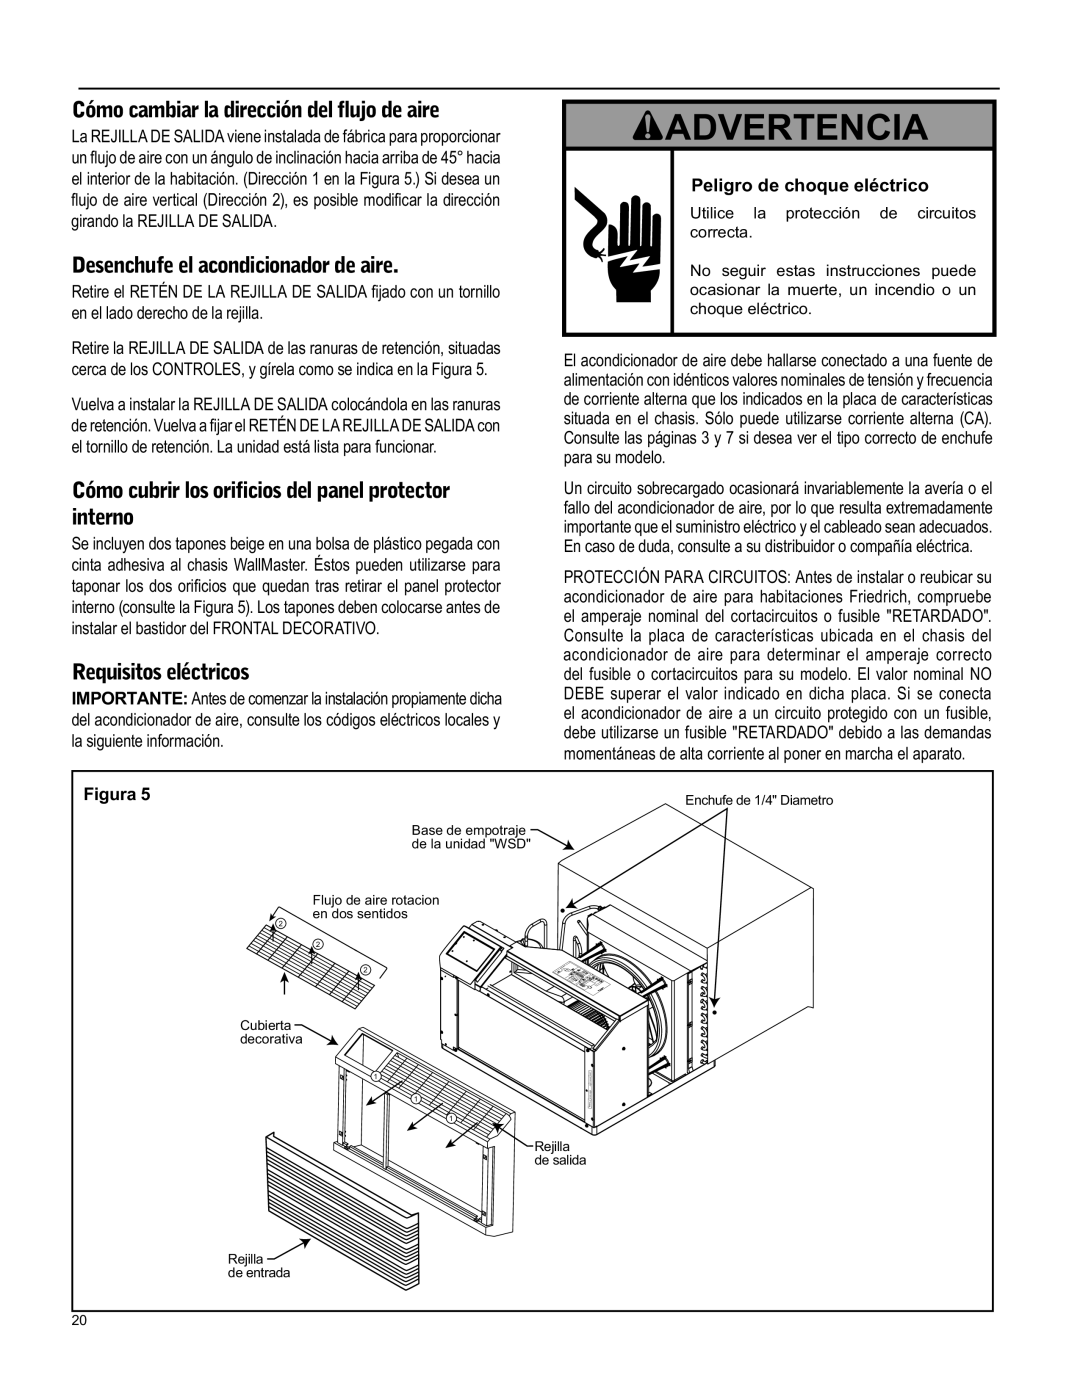 Friedrich WS12, WY12 Advertencia, Cómo cambiar la dirección del ﬂujo de aire, Desenchufe el acondicionador de aire, Figura 